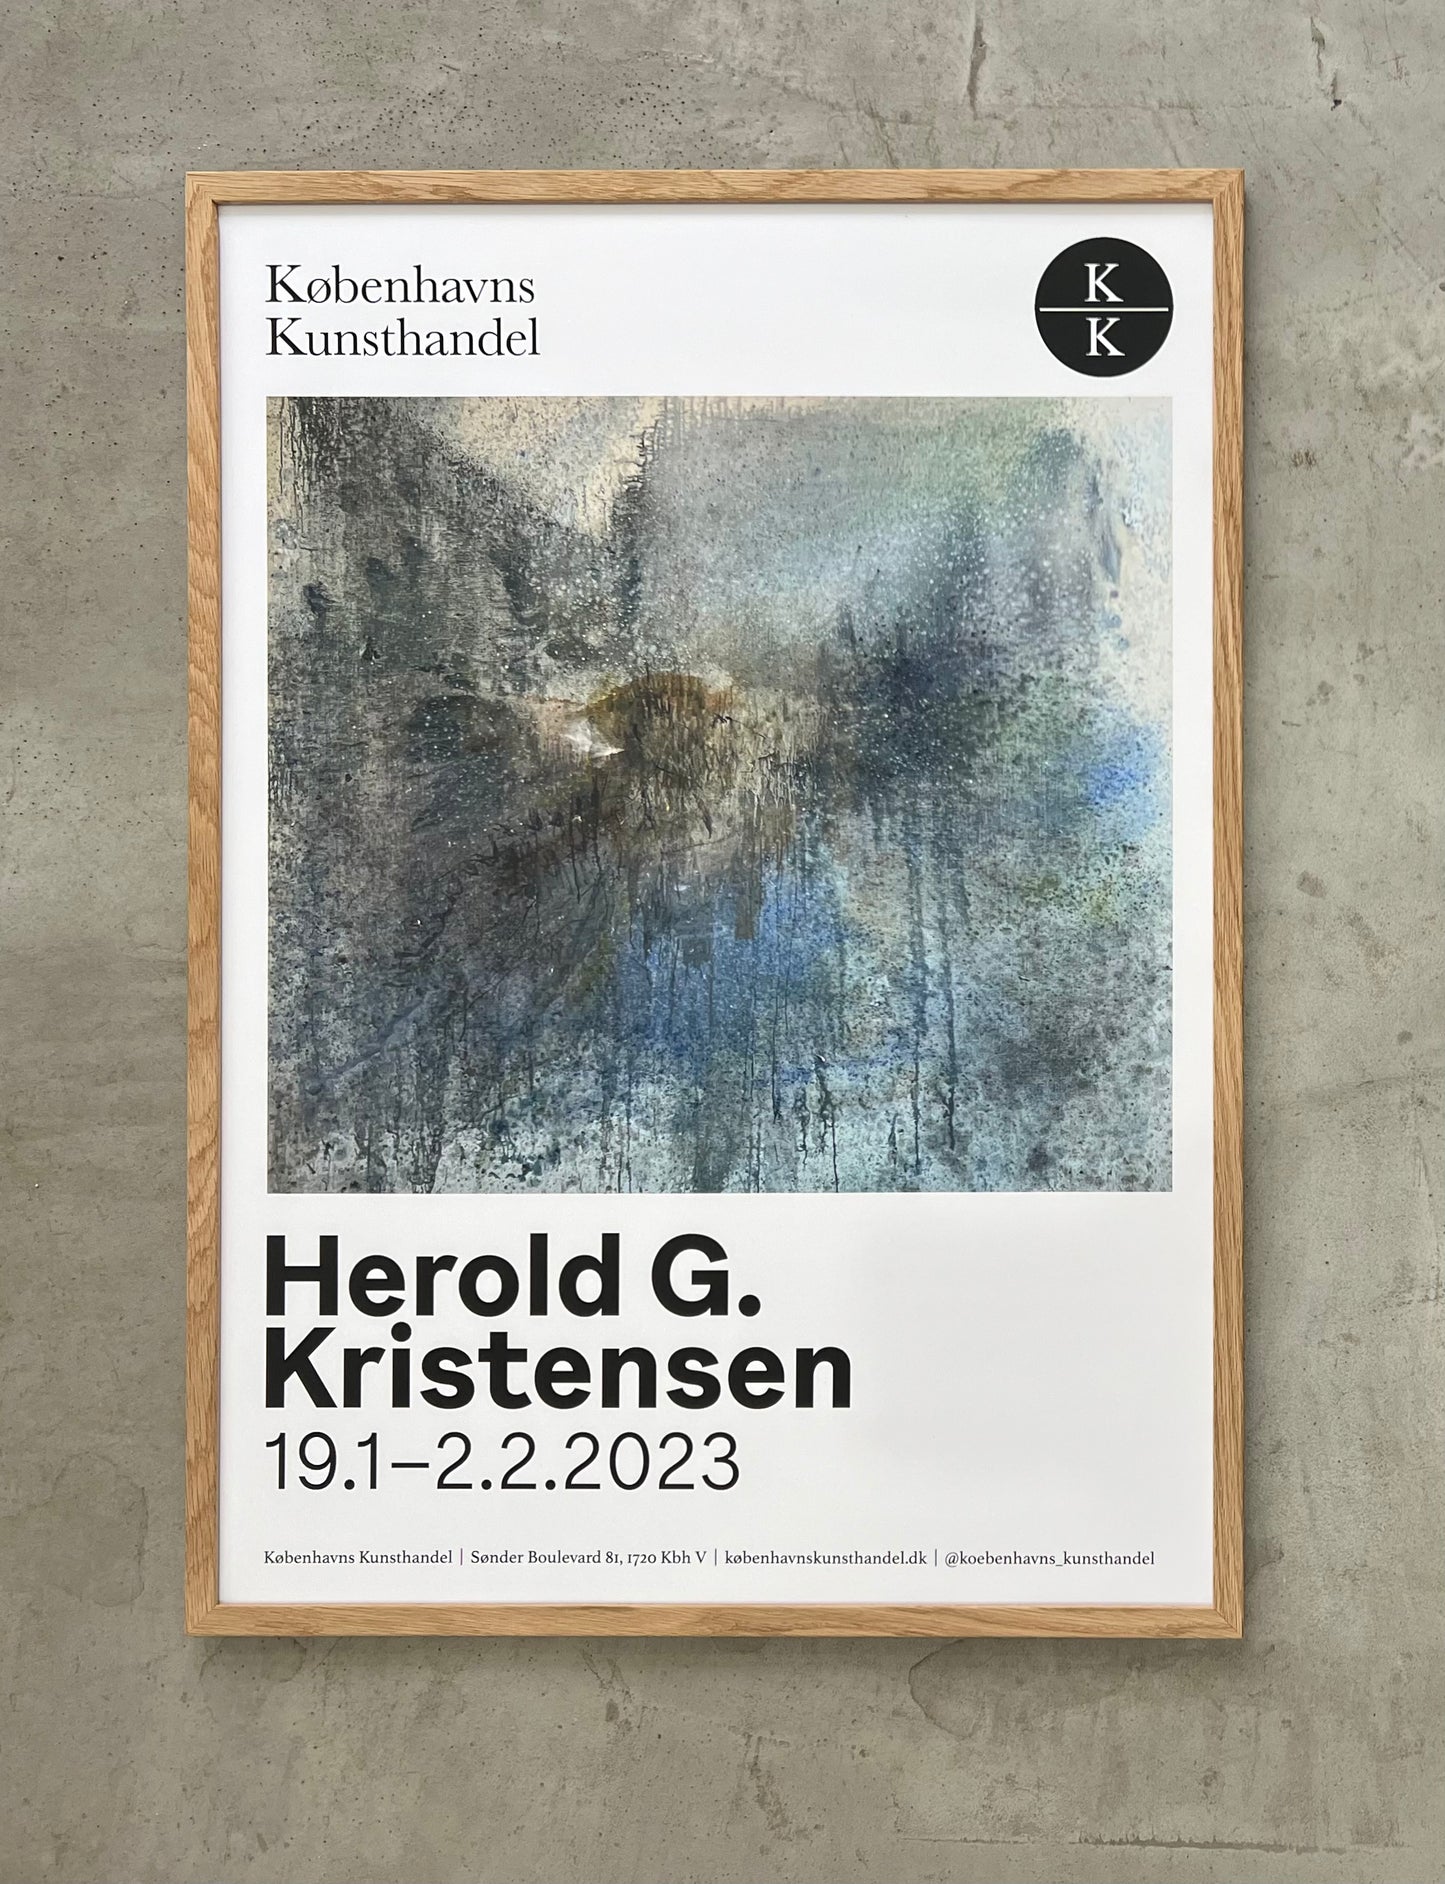 Herold G. Kristensen. Exhibtion poster, 2023